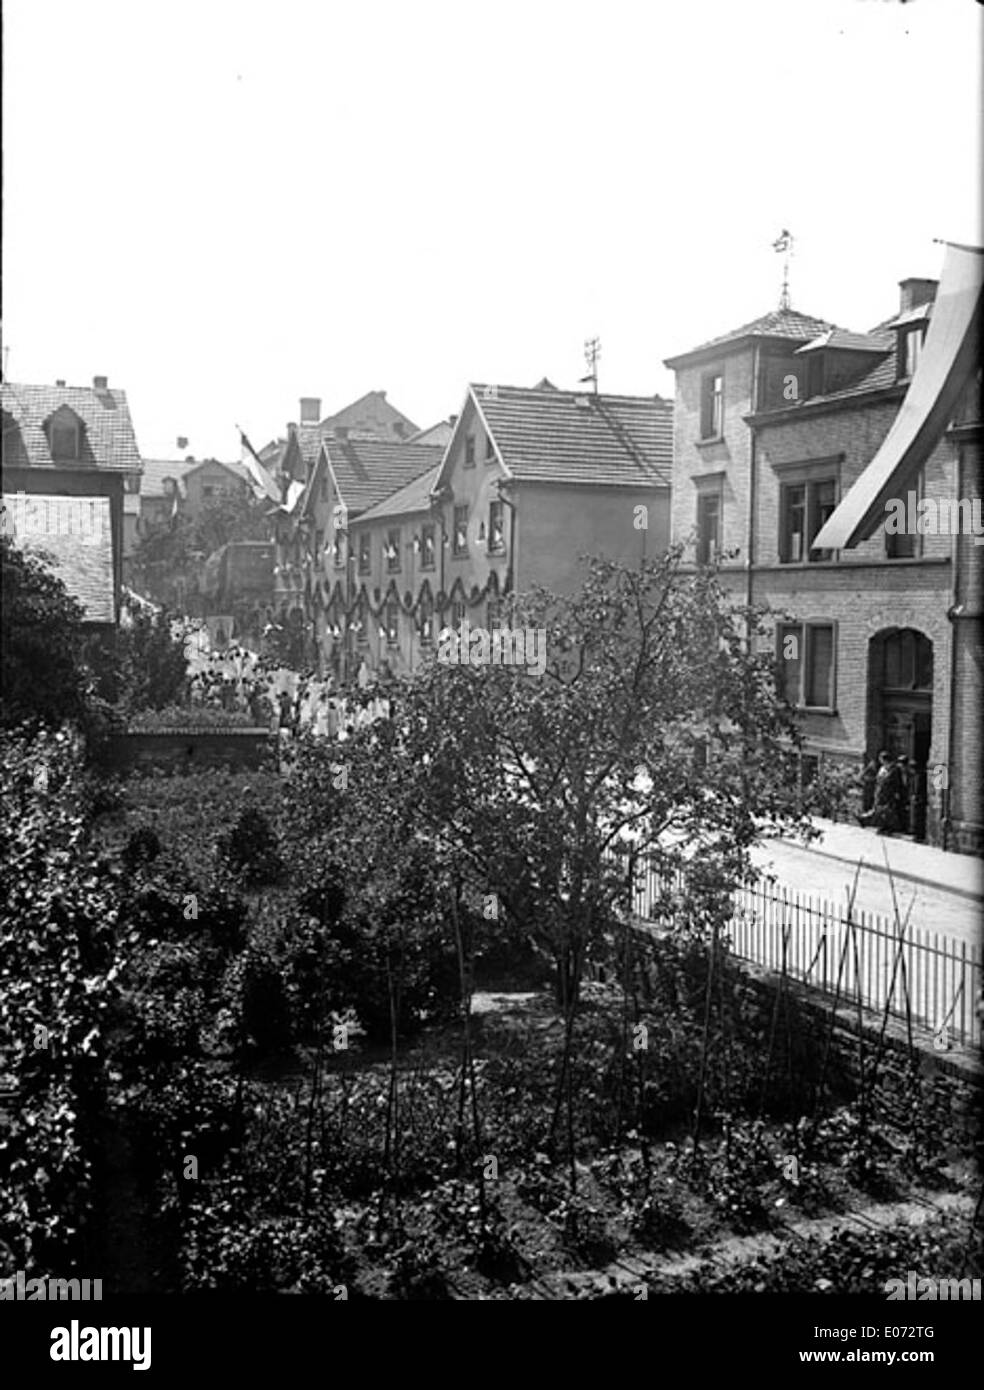 Jardin potager et maisons bordant une rue, Allemagne Foto de stock